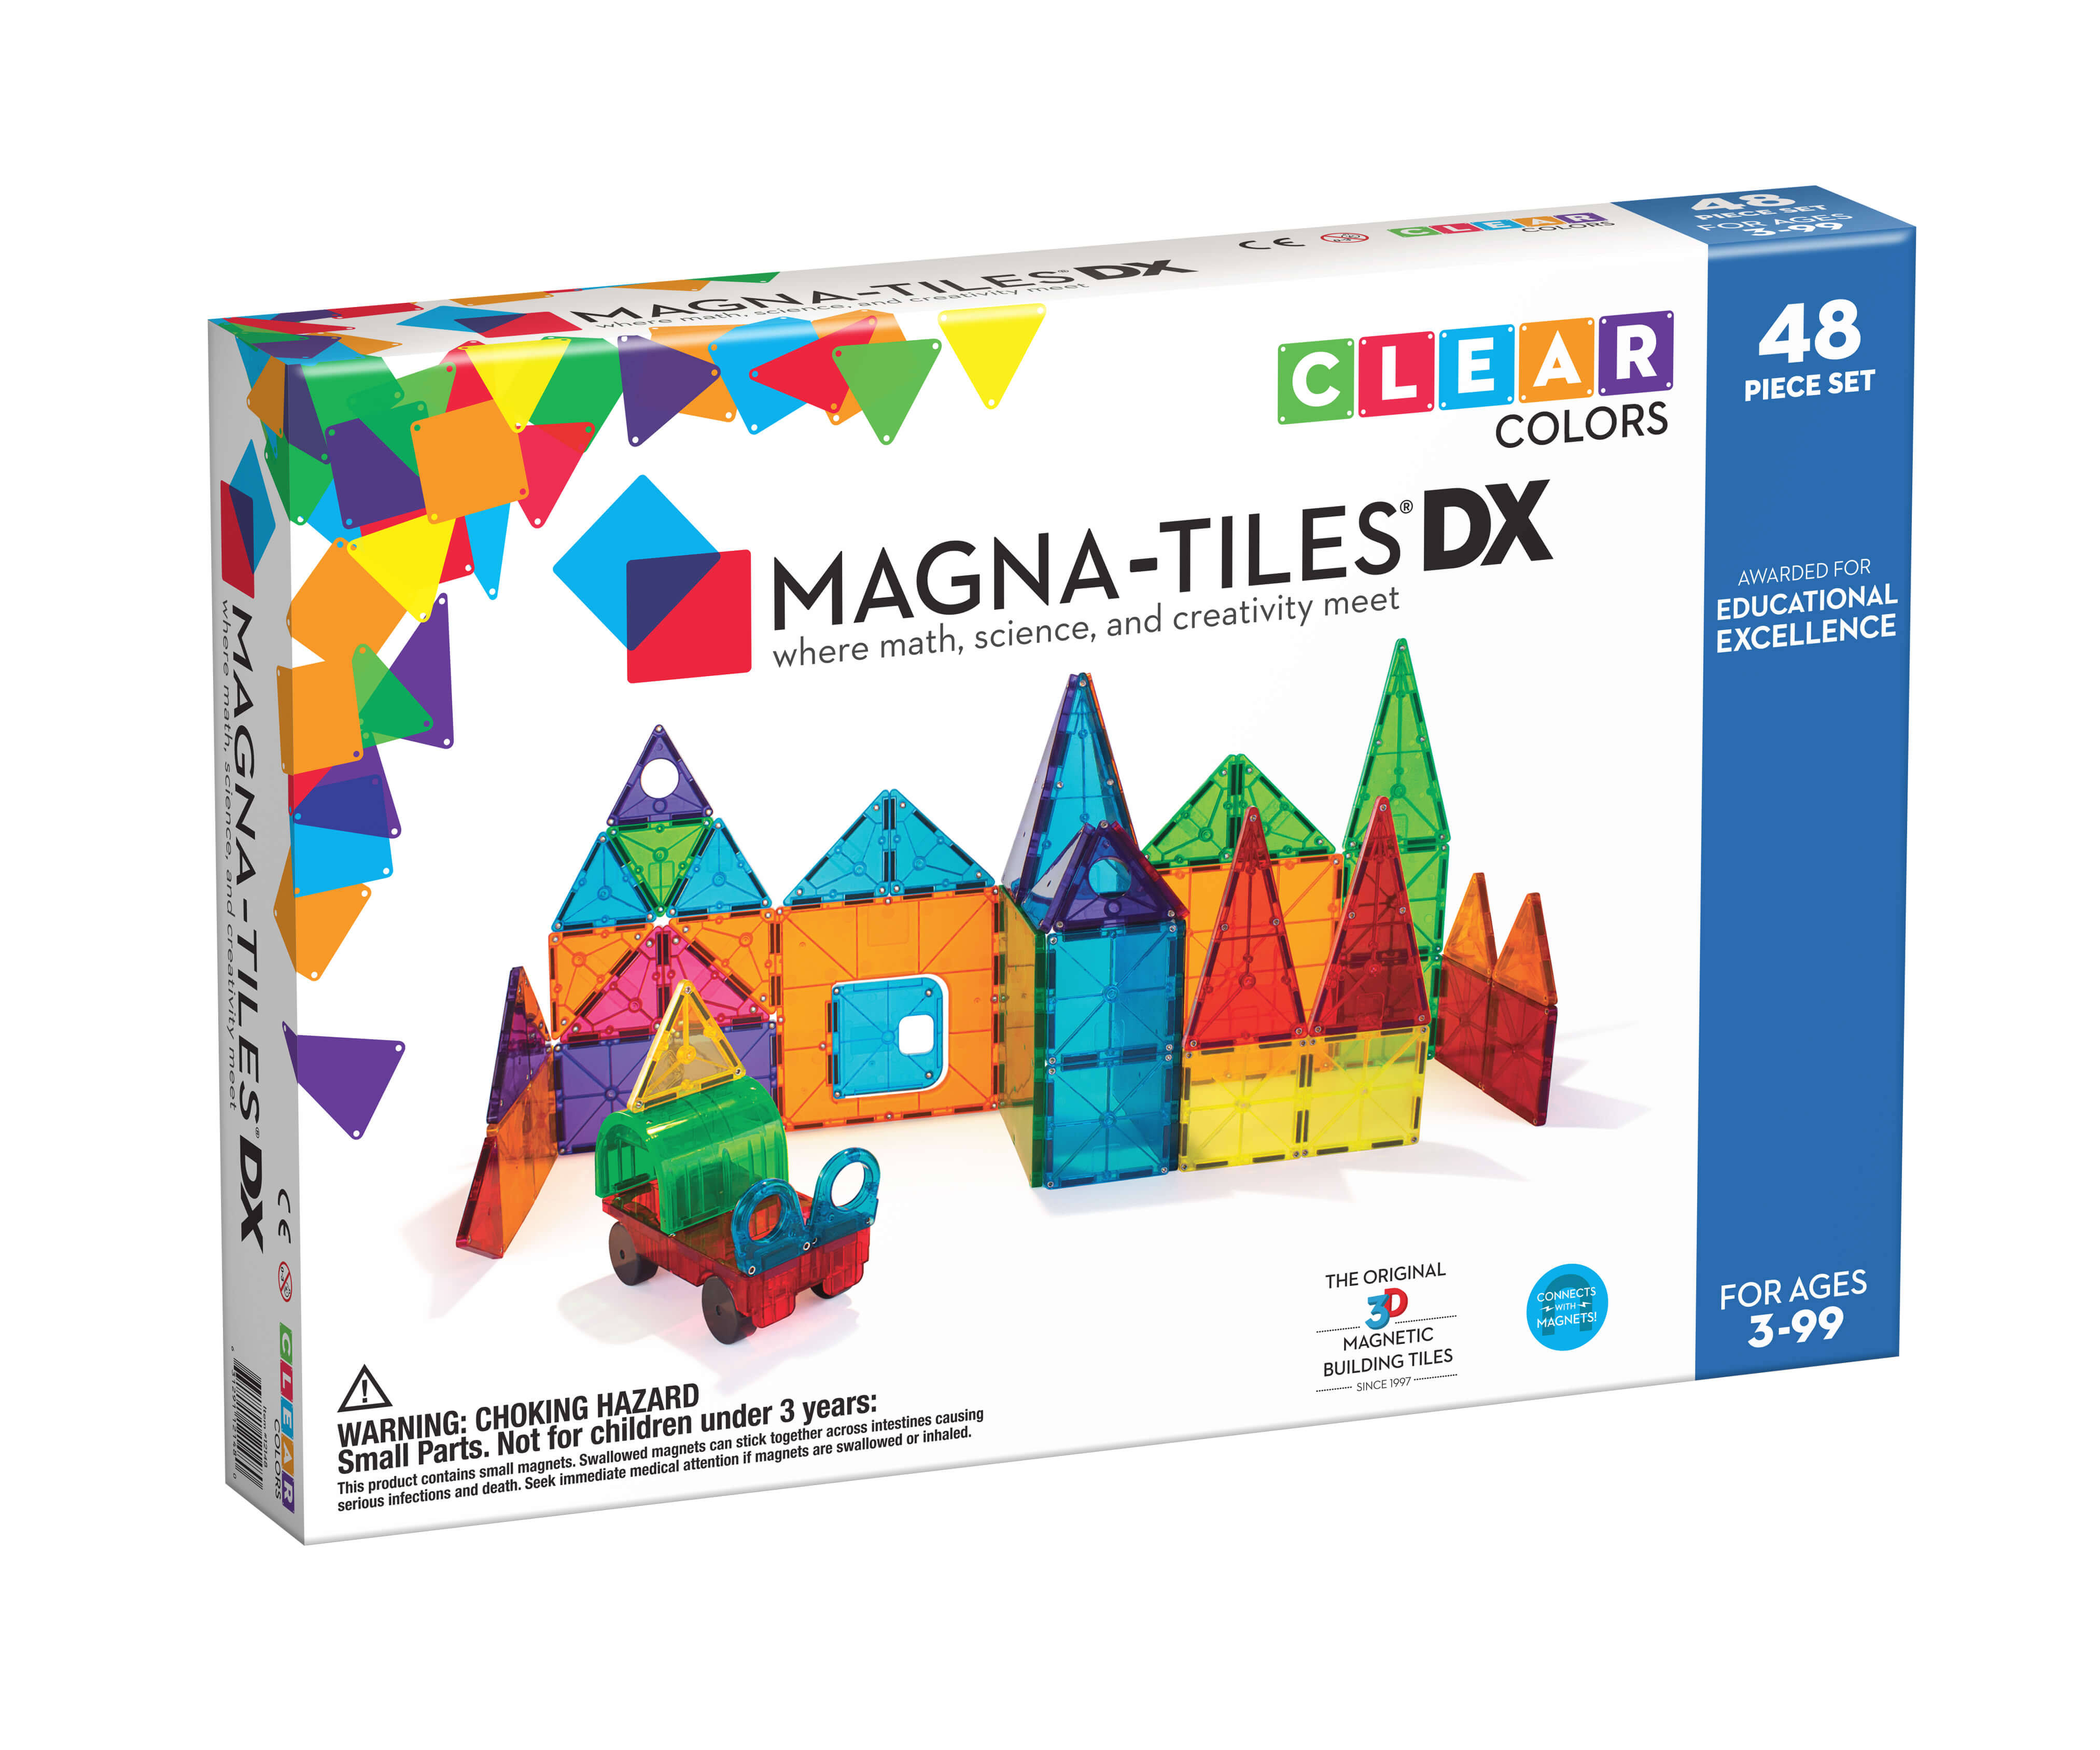 Magna Tiles Clear Colors 48 Piece DX Set